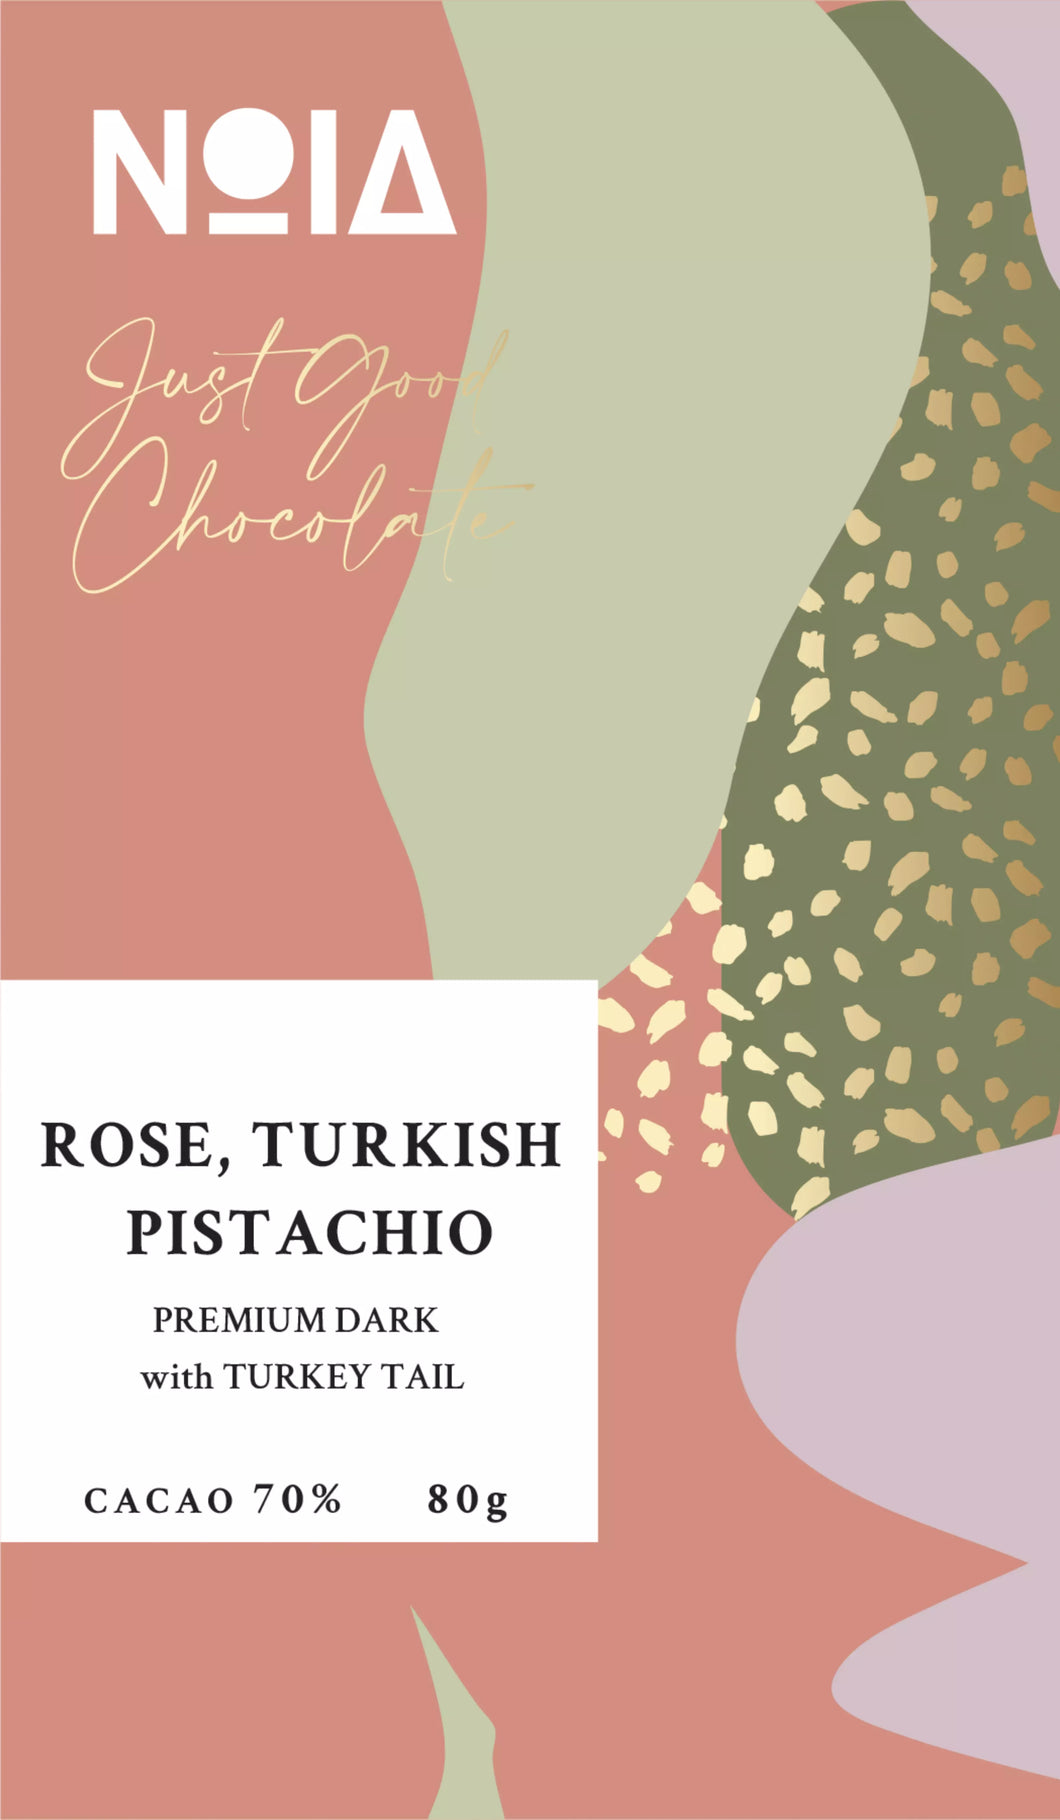 Rose, Turkish & Pistachio